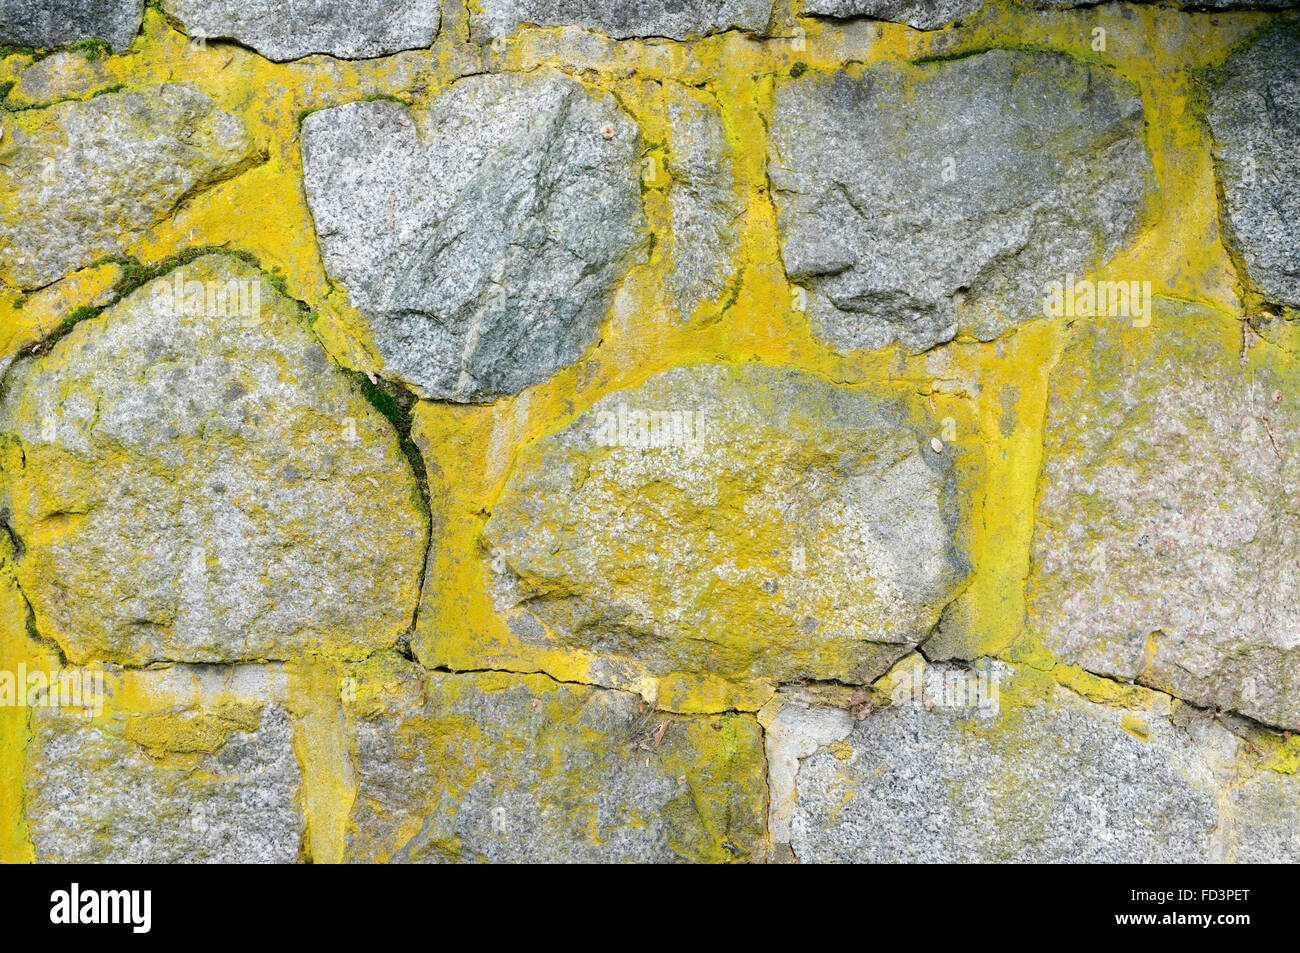 Nahaufnahme von Rough Cut grauen Stein Wand mit grünlich-gelben Flechten bedeckt Stockfoto